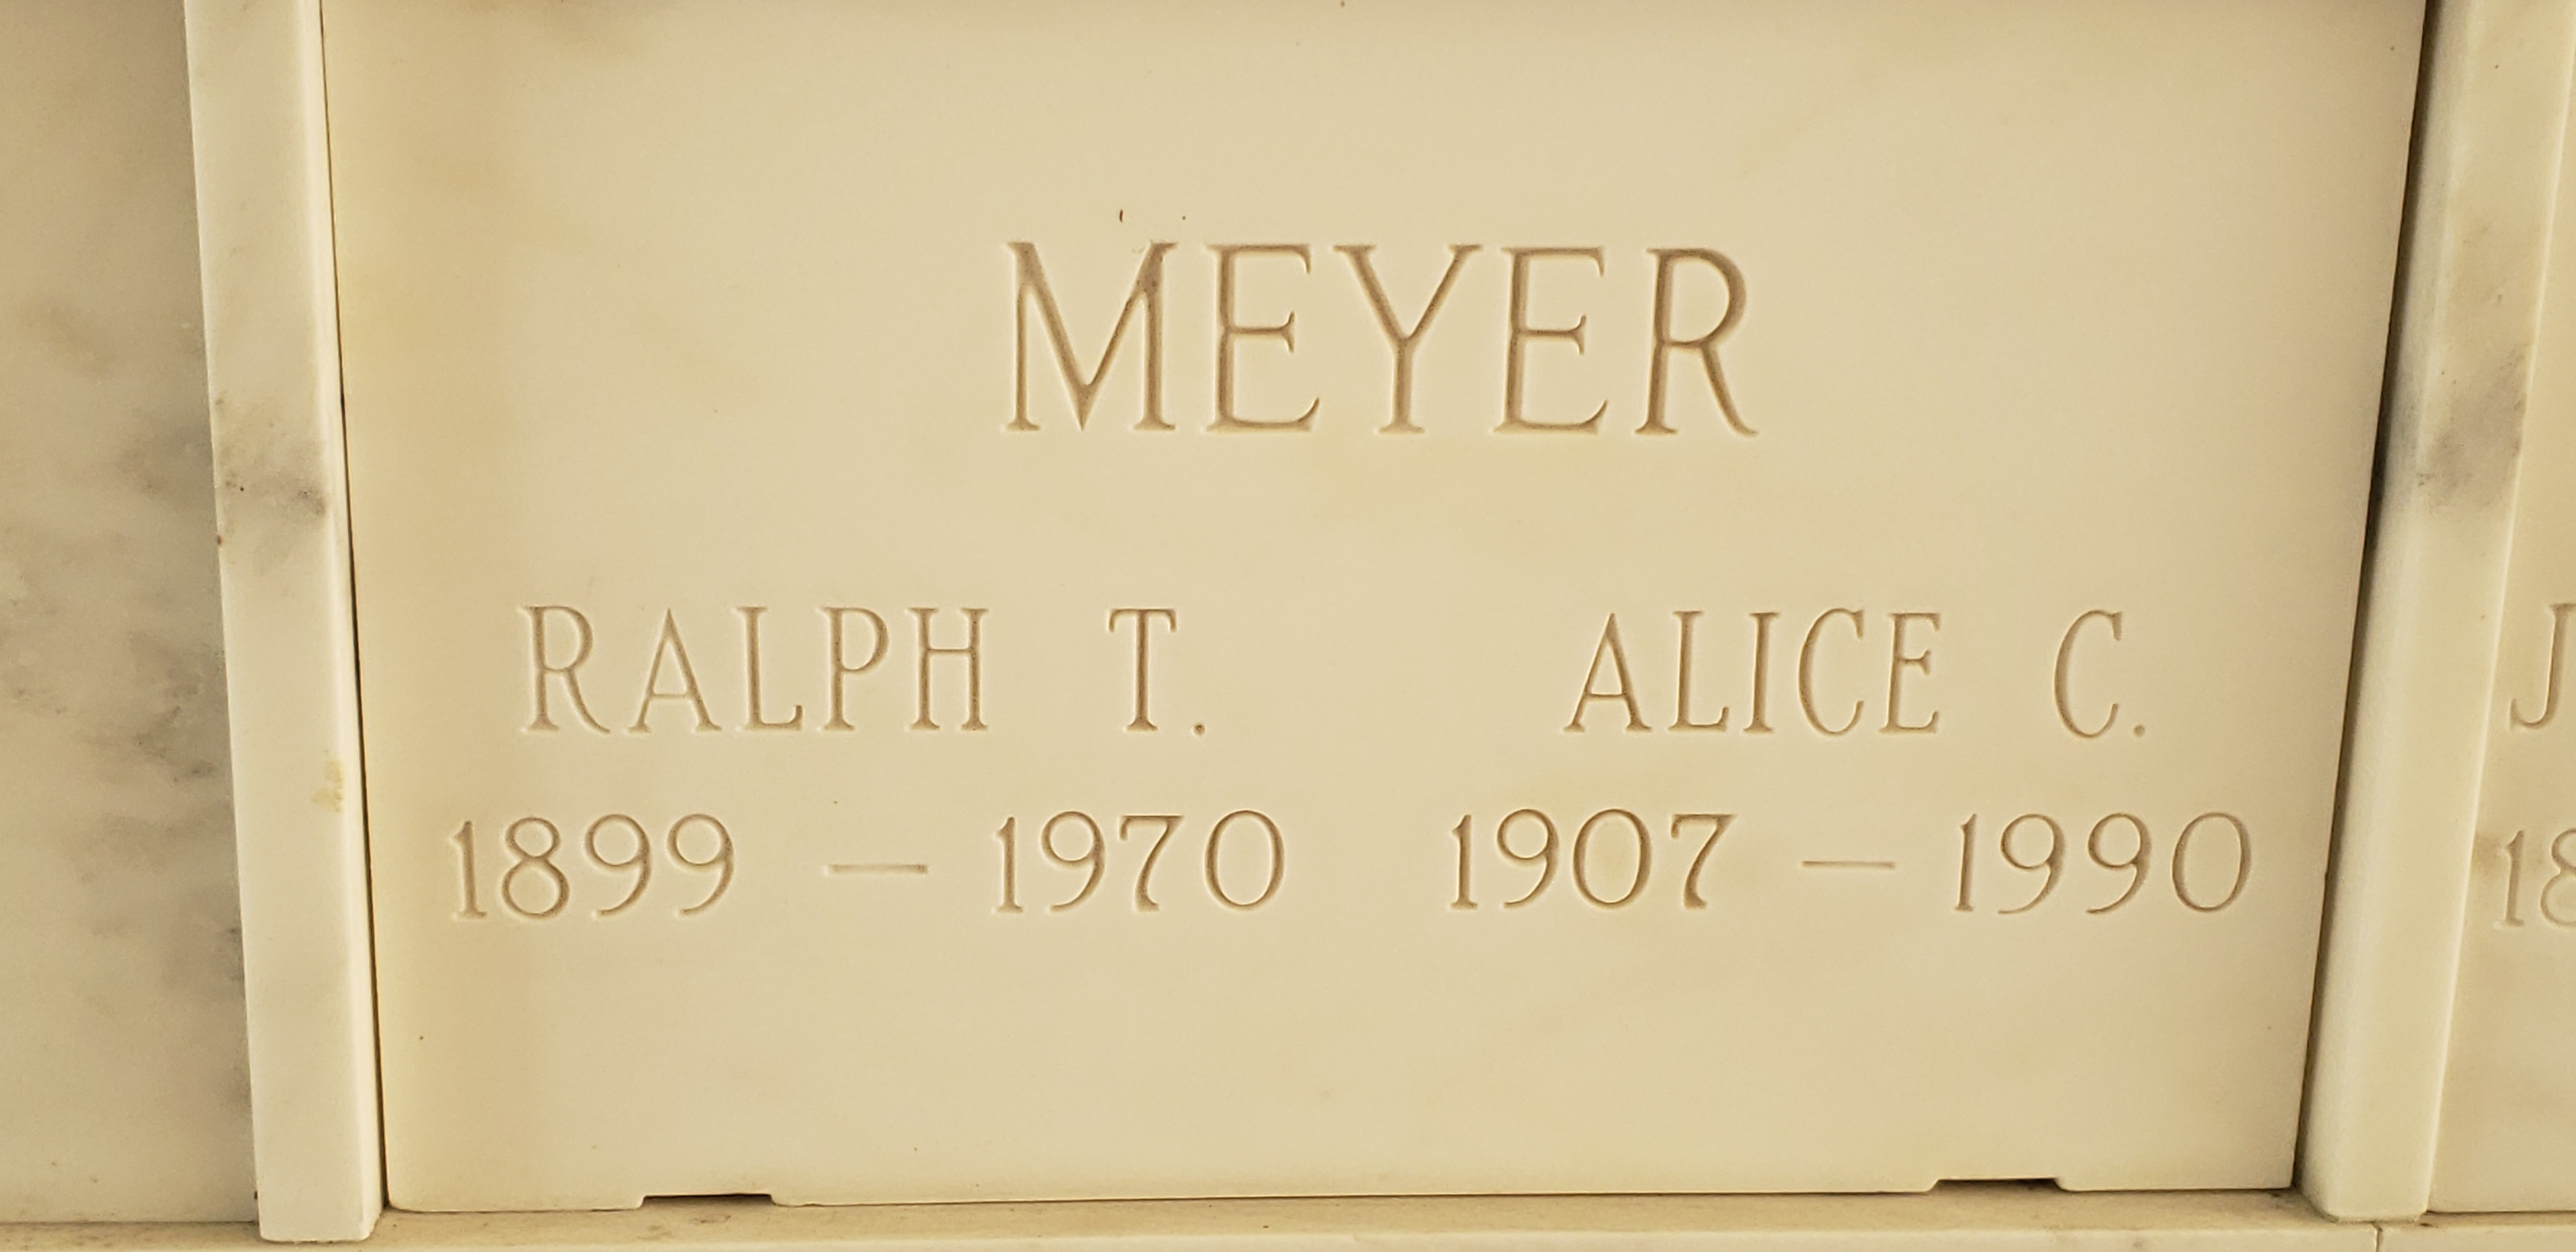 Ralph T Meyer